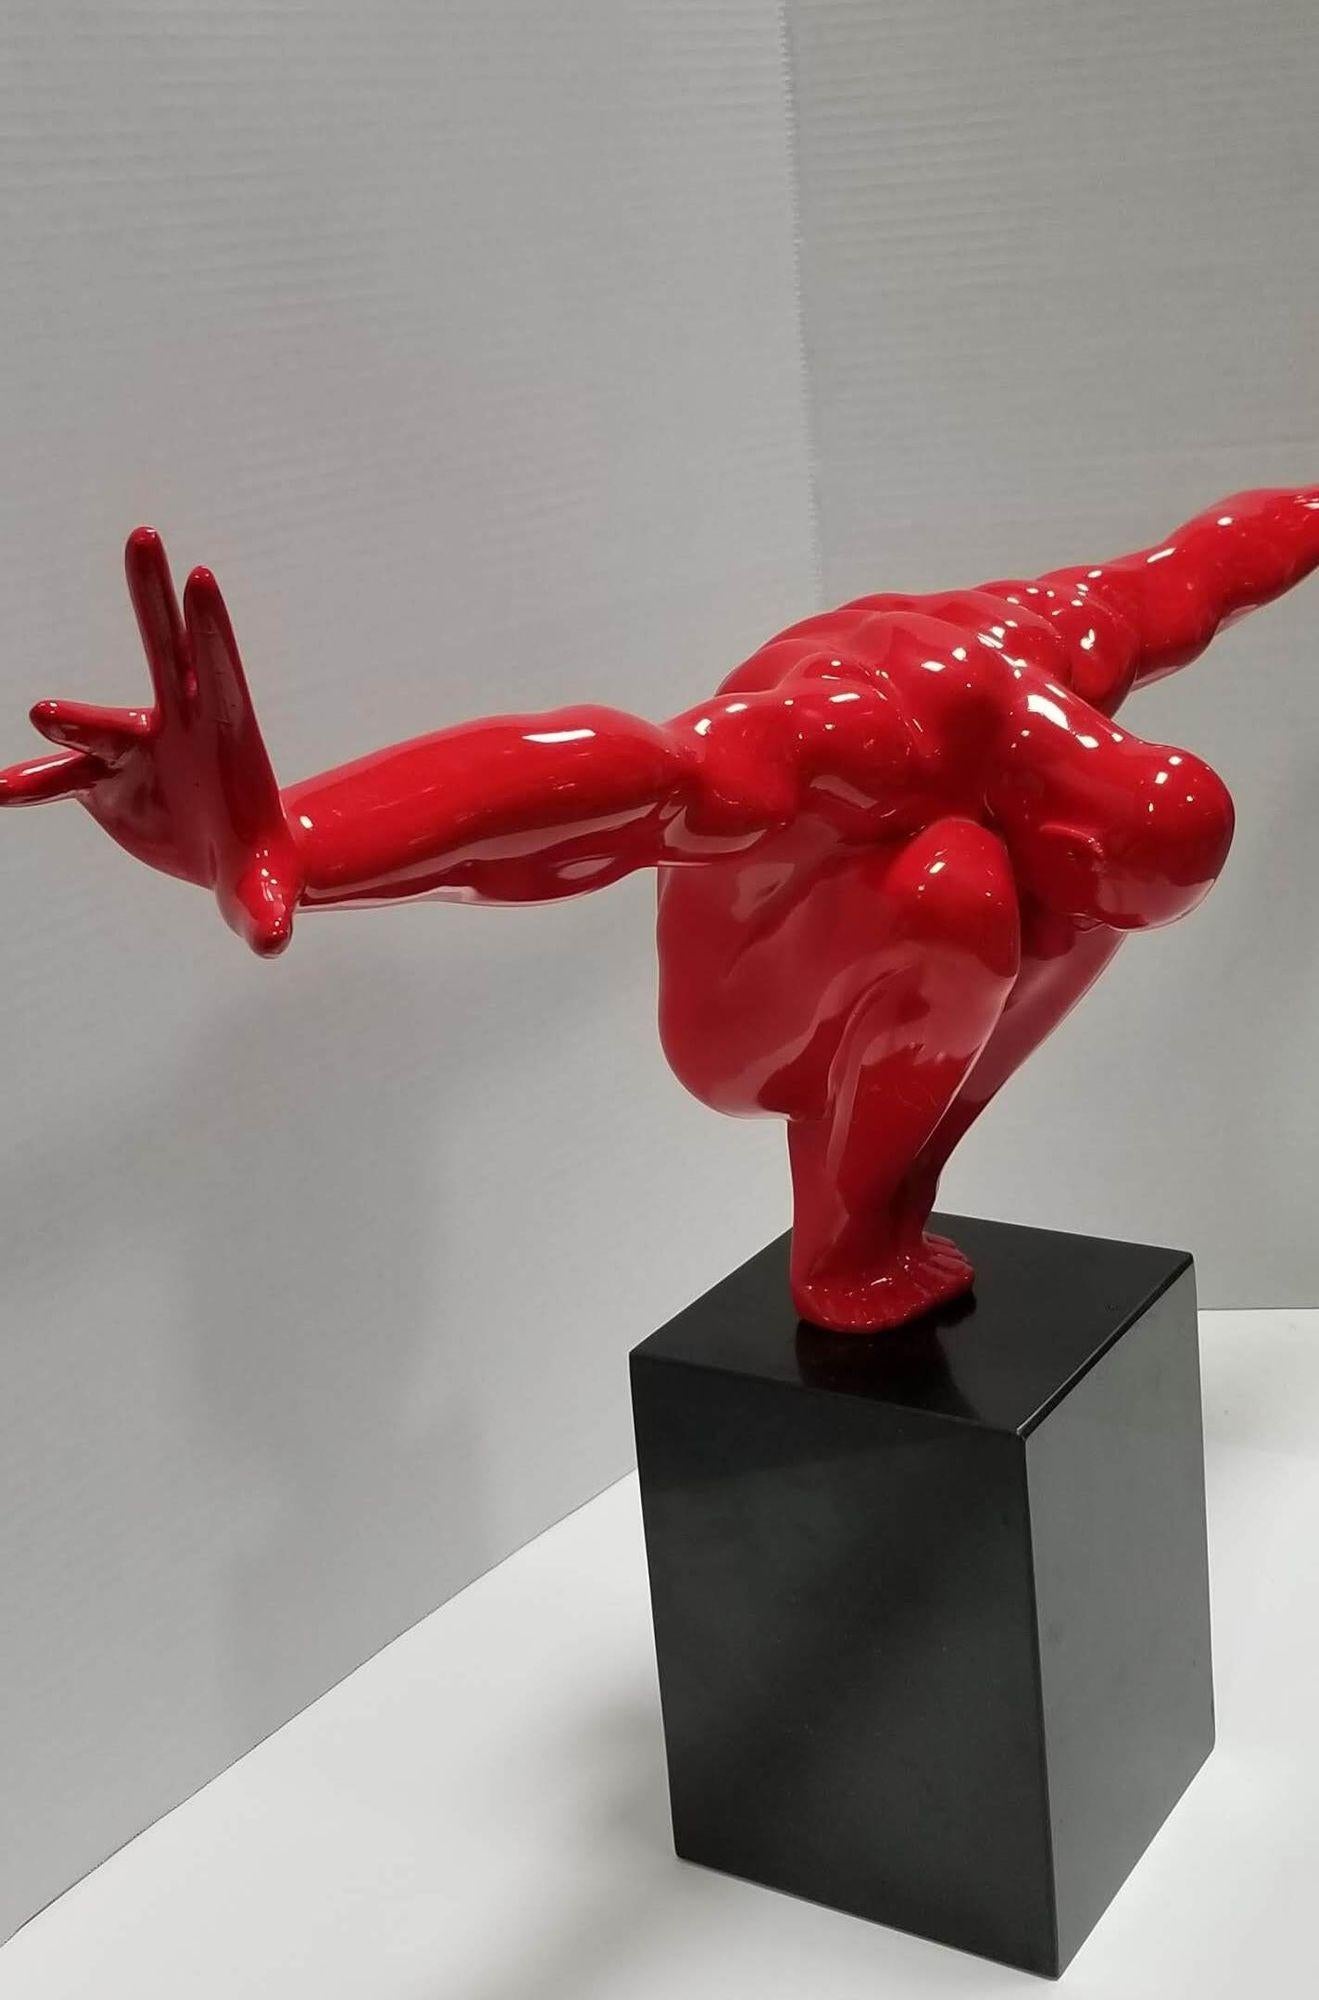 Die Red Man Skulptur ist ein atemberaubendes Dekorationsstück, das jedem Zuhause oder Büro einen Hauch von Raffinesse verleiht. Diese maskuline Skulptur zeigt einen kauernden Mann mit ausgestreckten Armen, der das Gleichgewicht und die Erweiterung